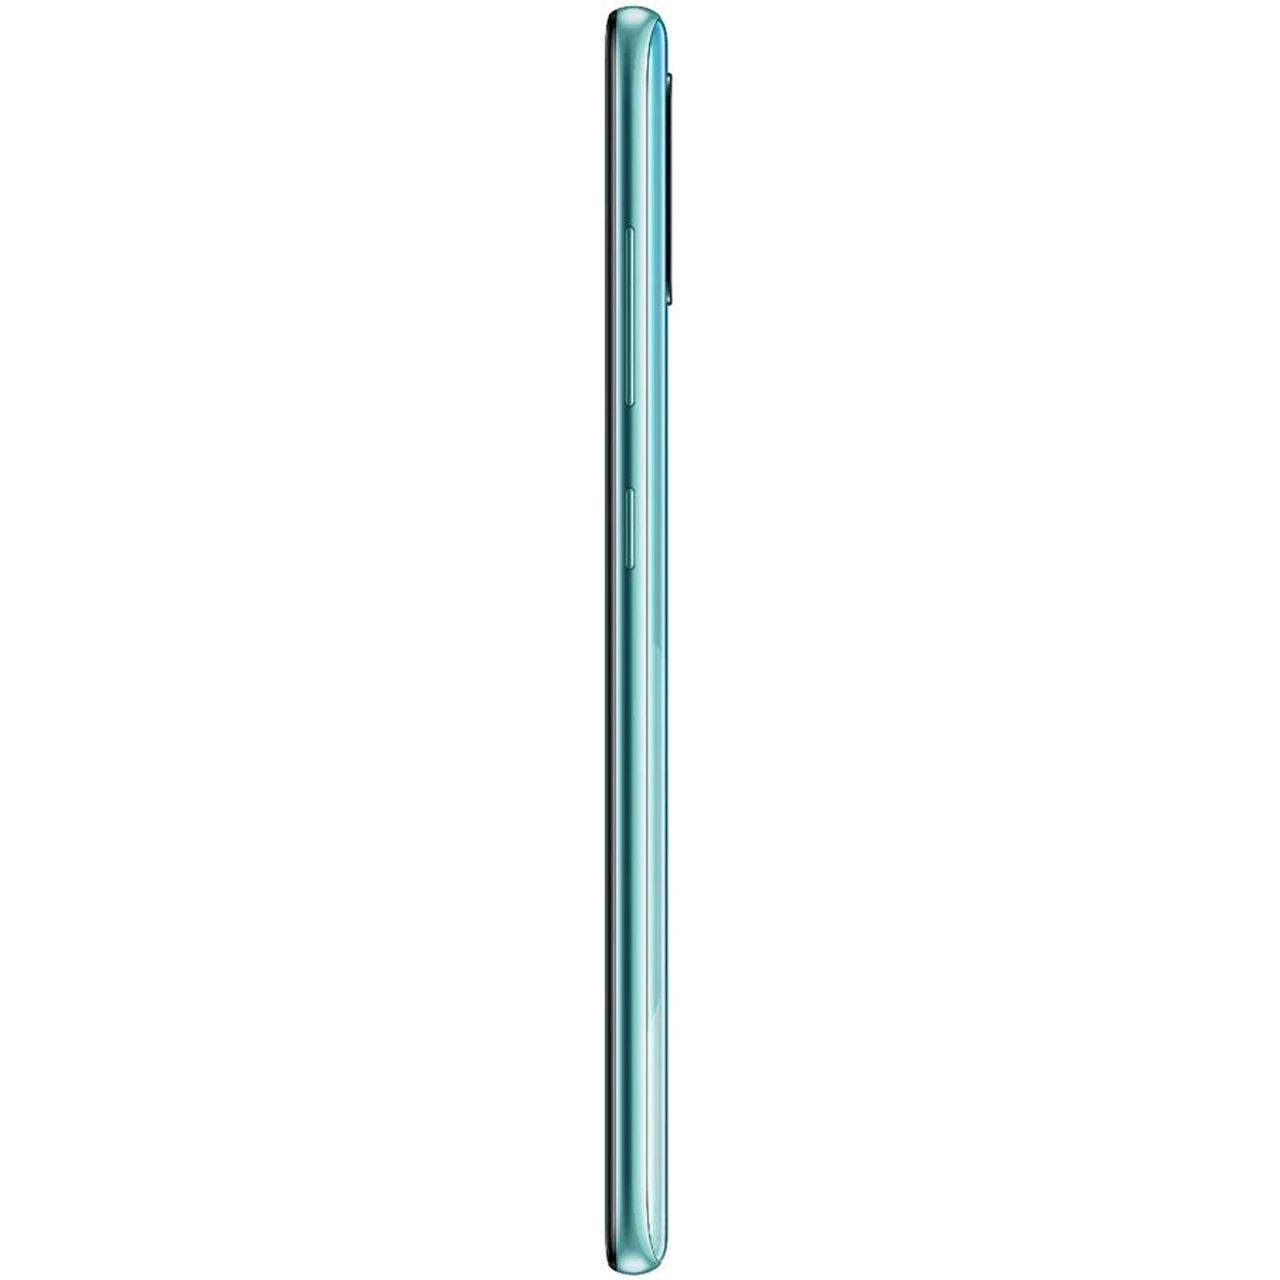 فروش نقدی و اقساطی گوشی موبایل سامسونگ مدل Galaxy A51 دو سیم کارت ظرفیت 128گیگابایت با رم 8 گیگابایت